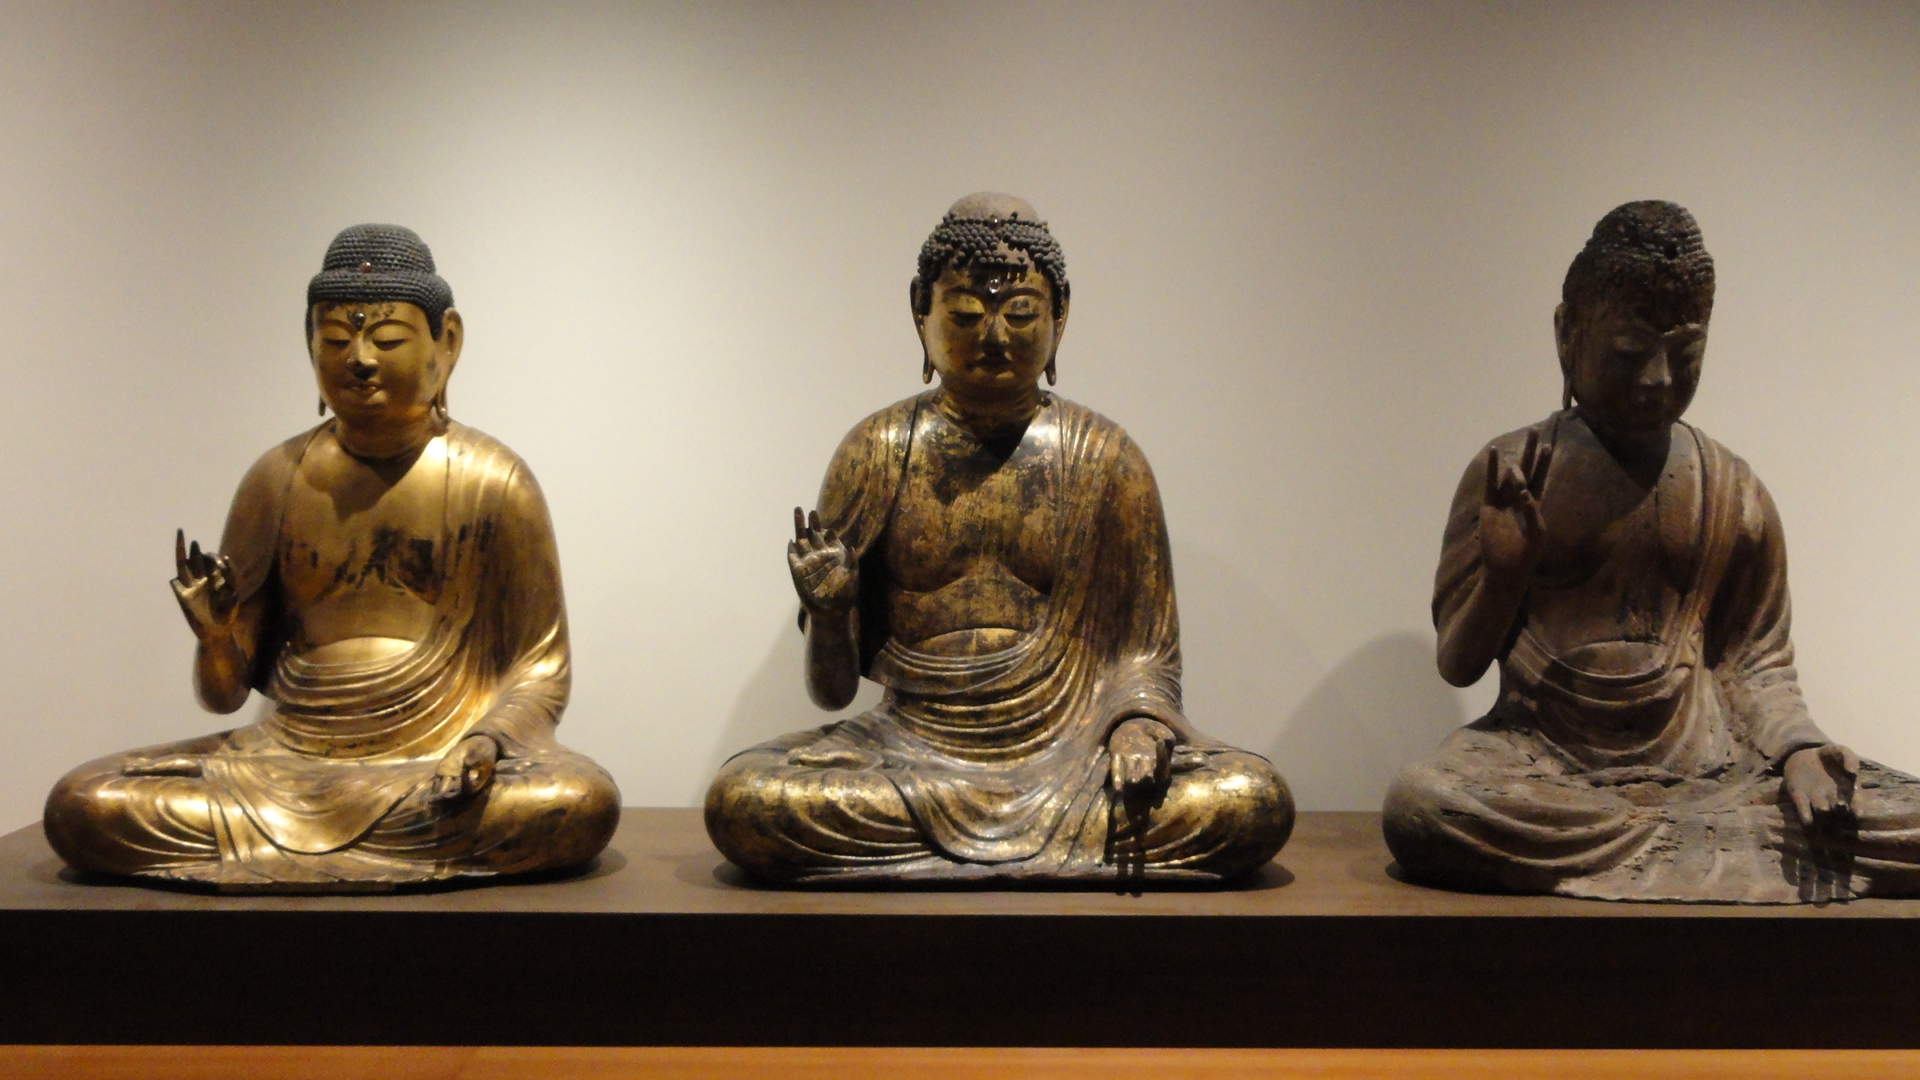 Les arts asiatiques au musée Guimet